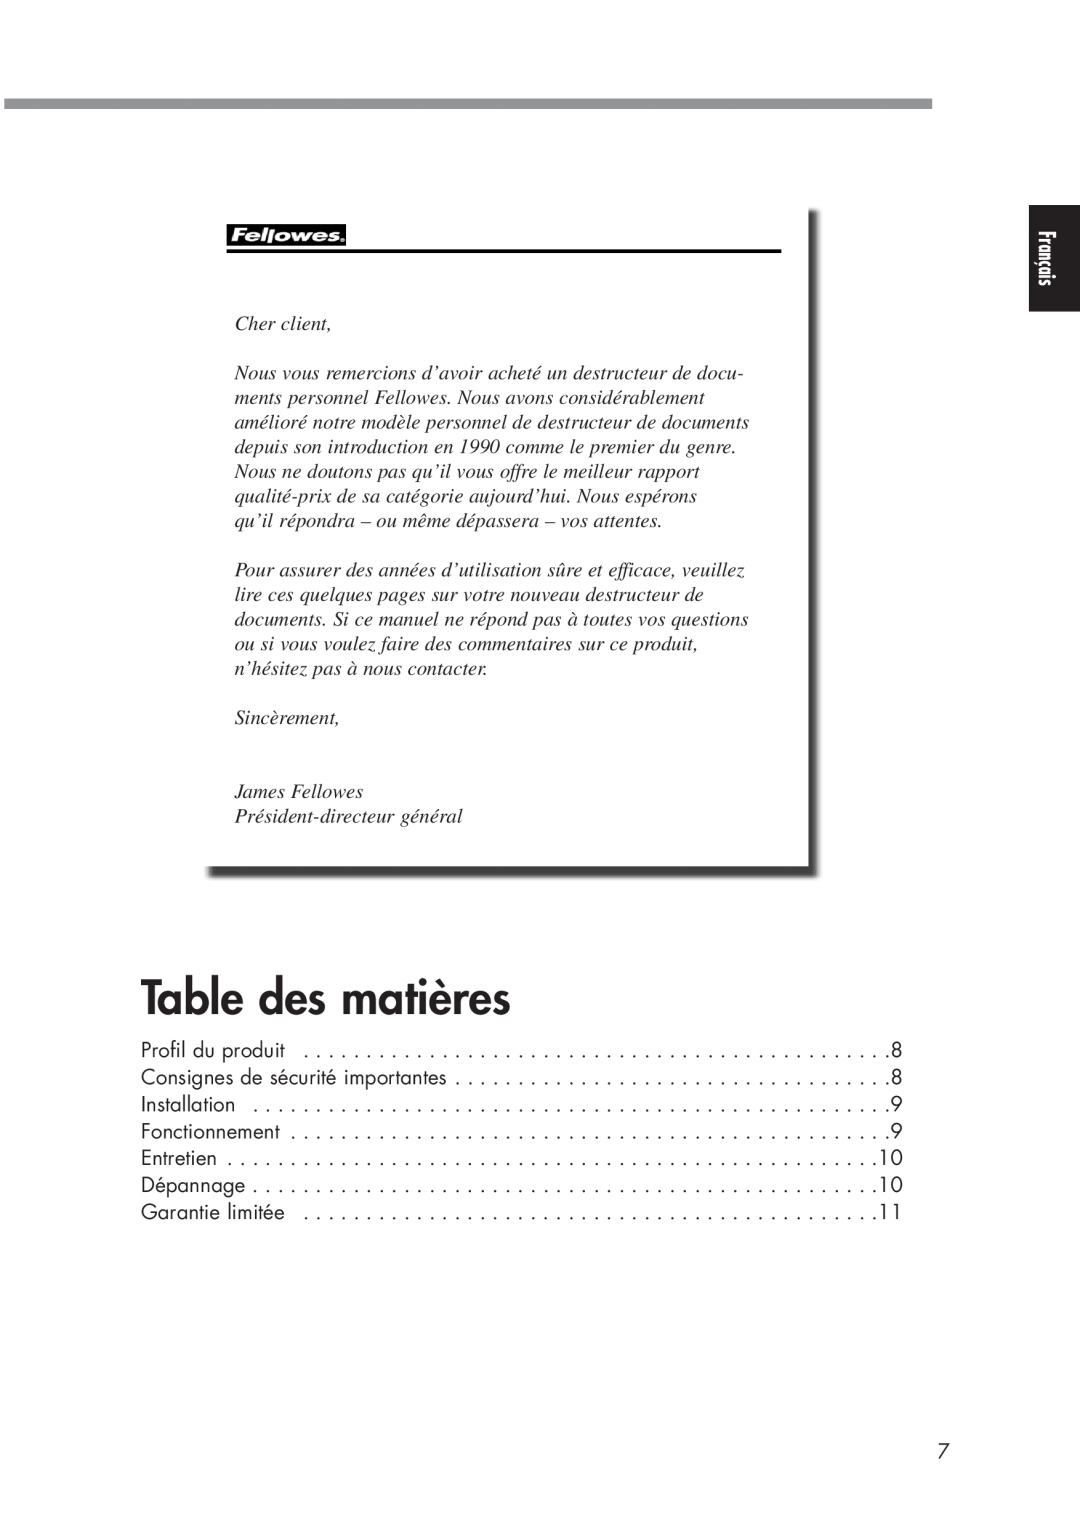 Fellowes P70CM manual Table des matières, Cher client, Sincèrement James Fellowes Président-directeur général 